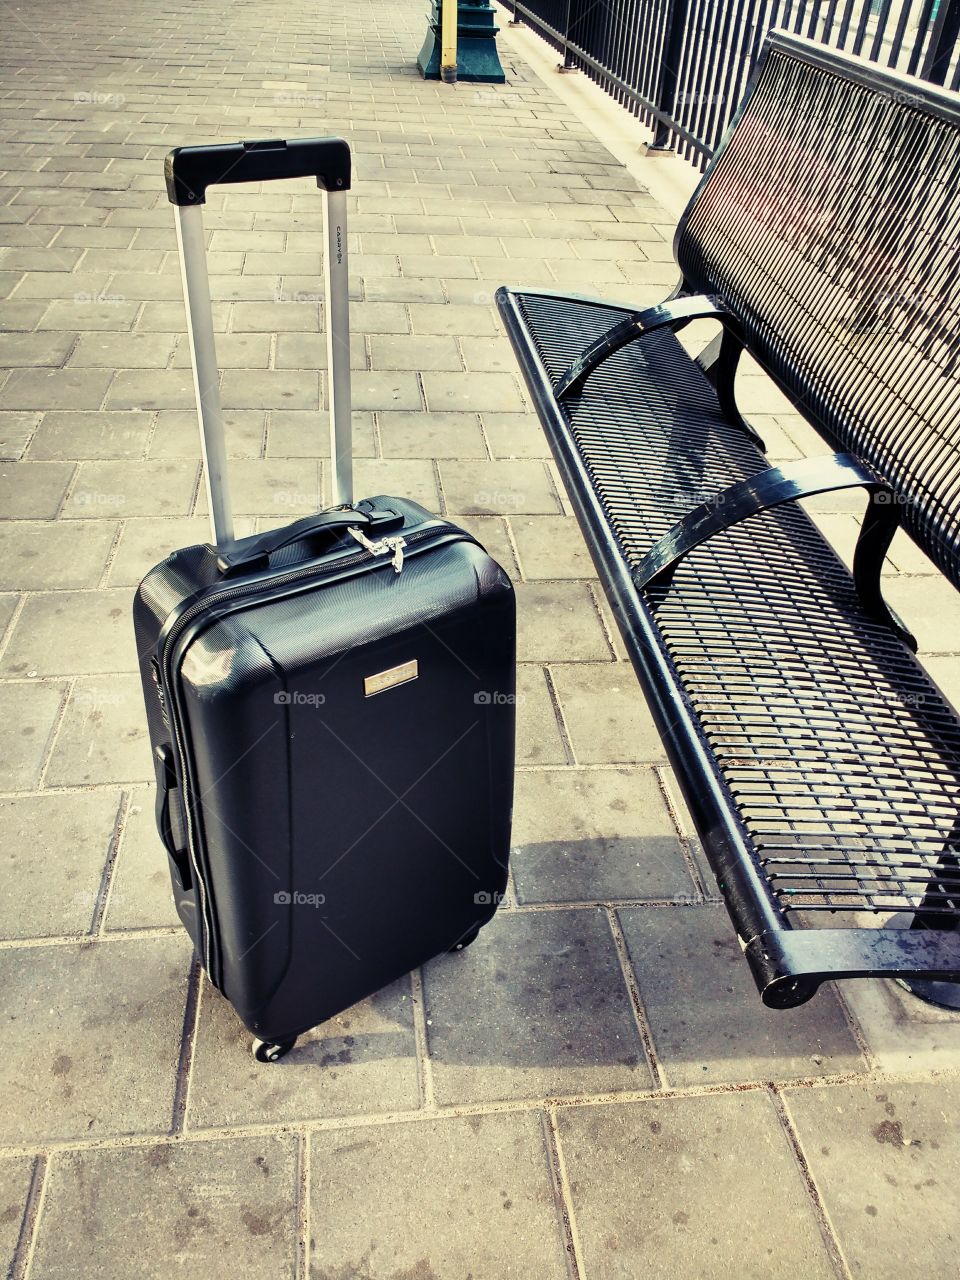 Abandoned suitcase at railway station platform